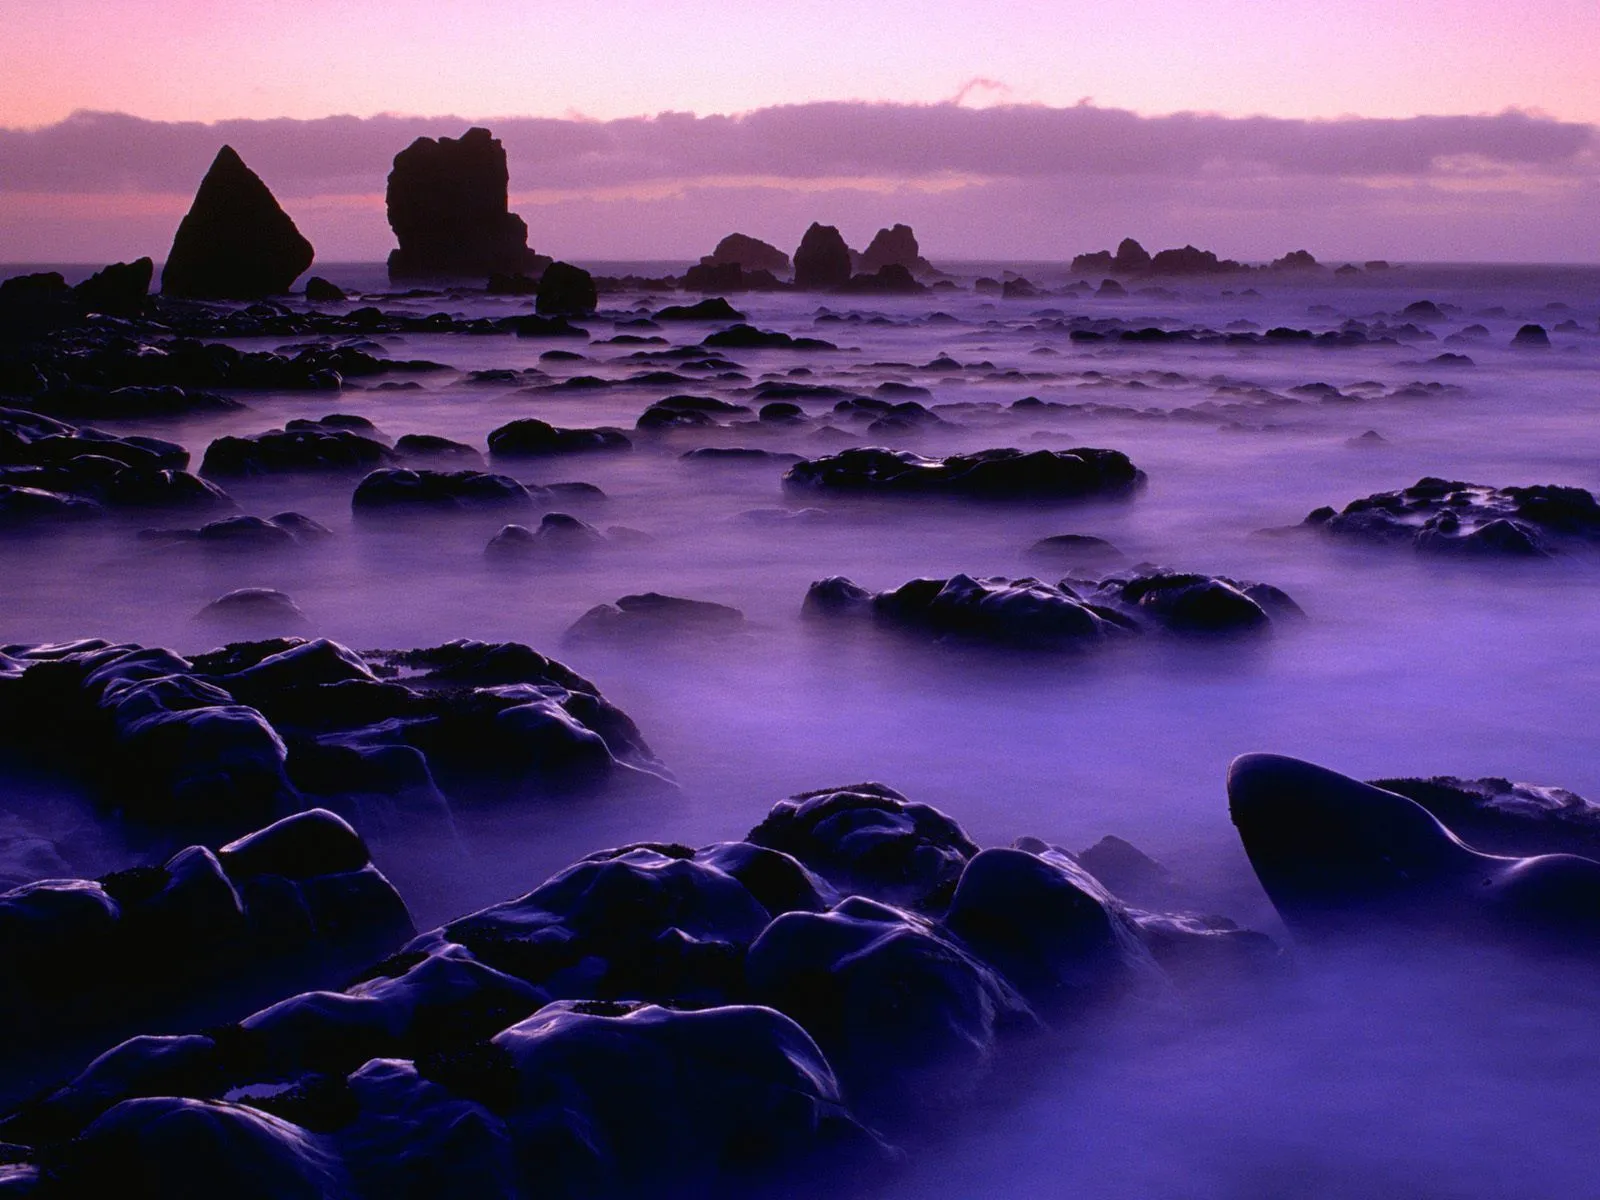  ... Picture: Nueva Zelanda - Naturaleza y Paisajes de Nueva Zelanda en HD